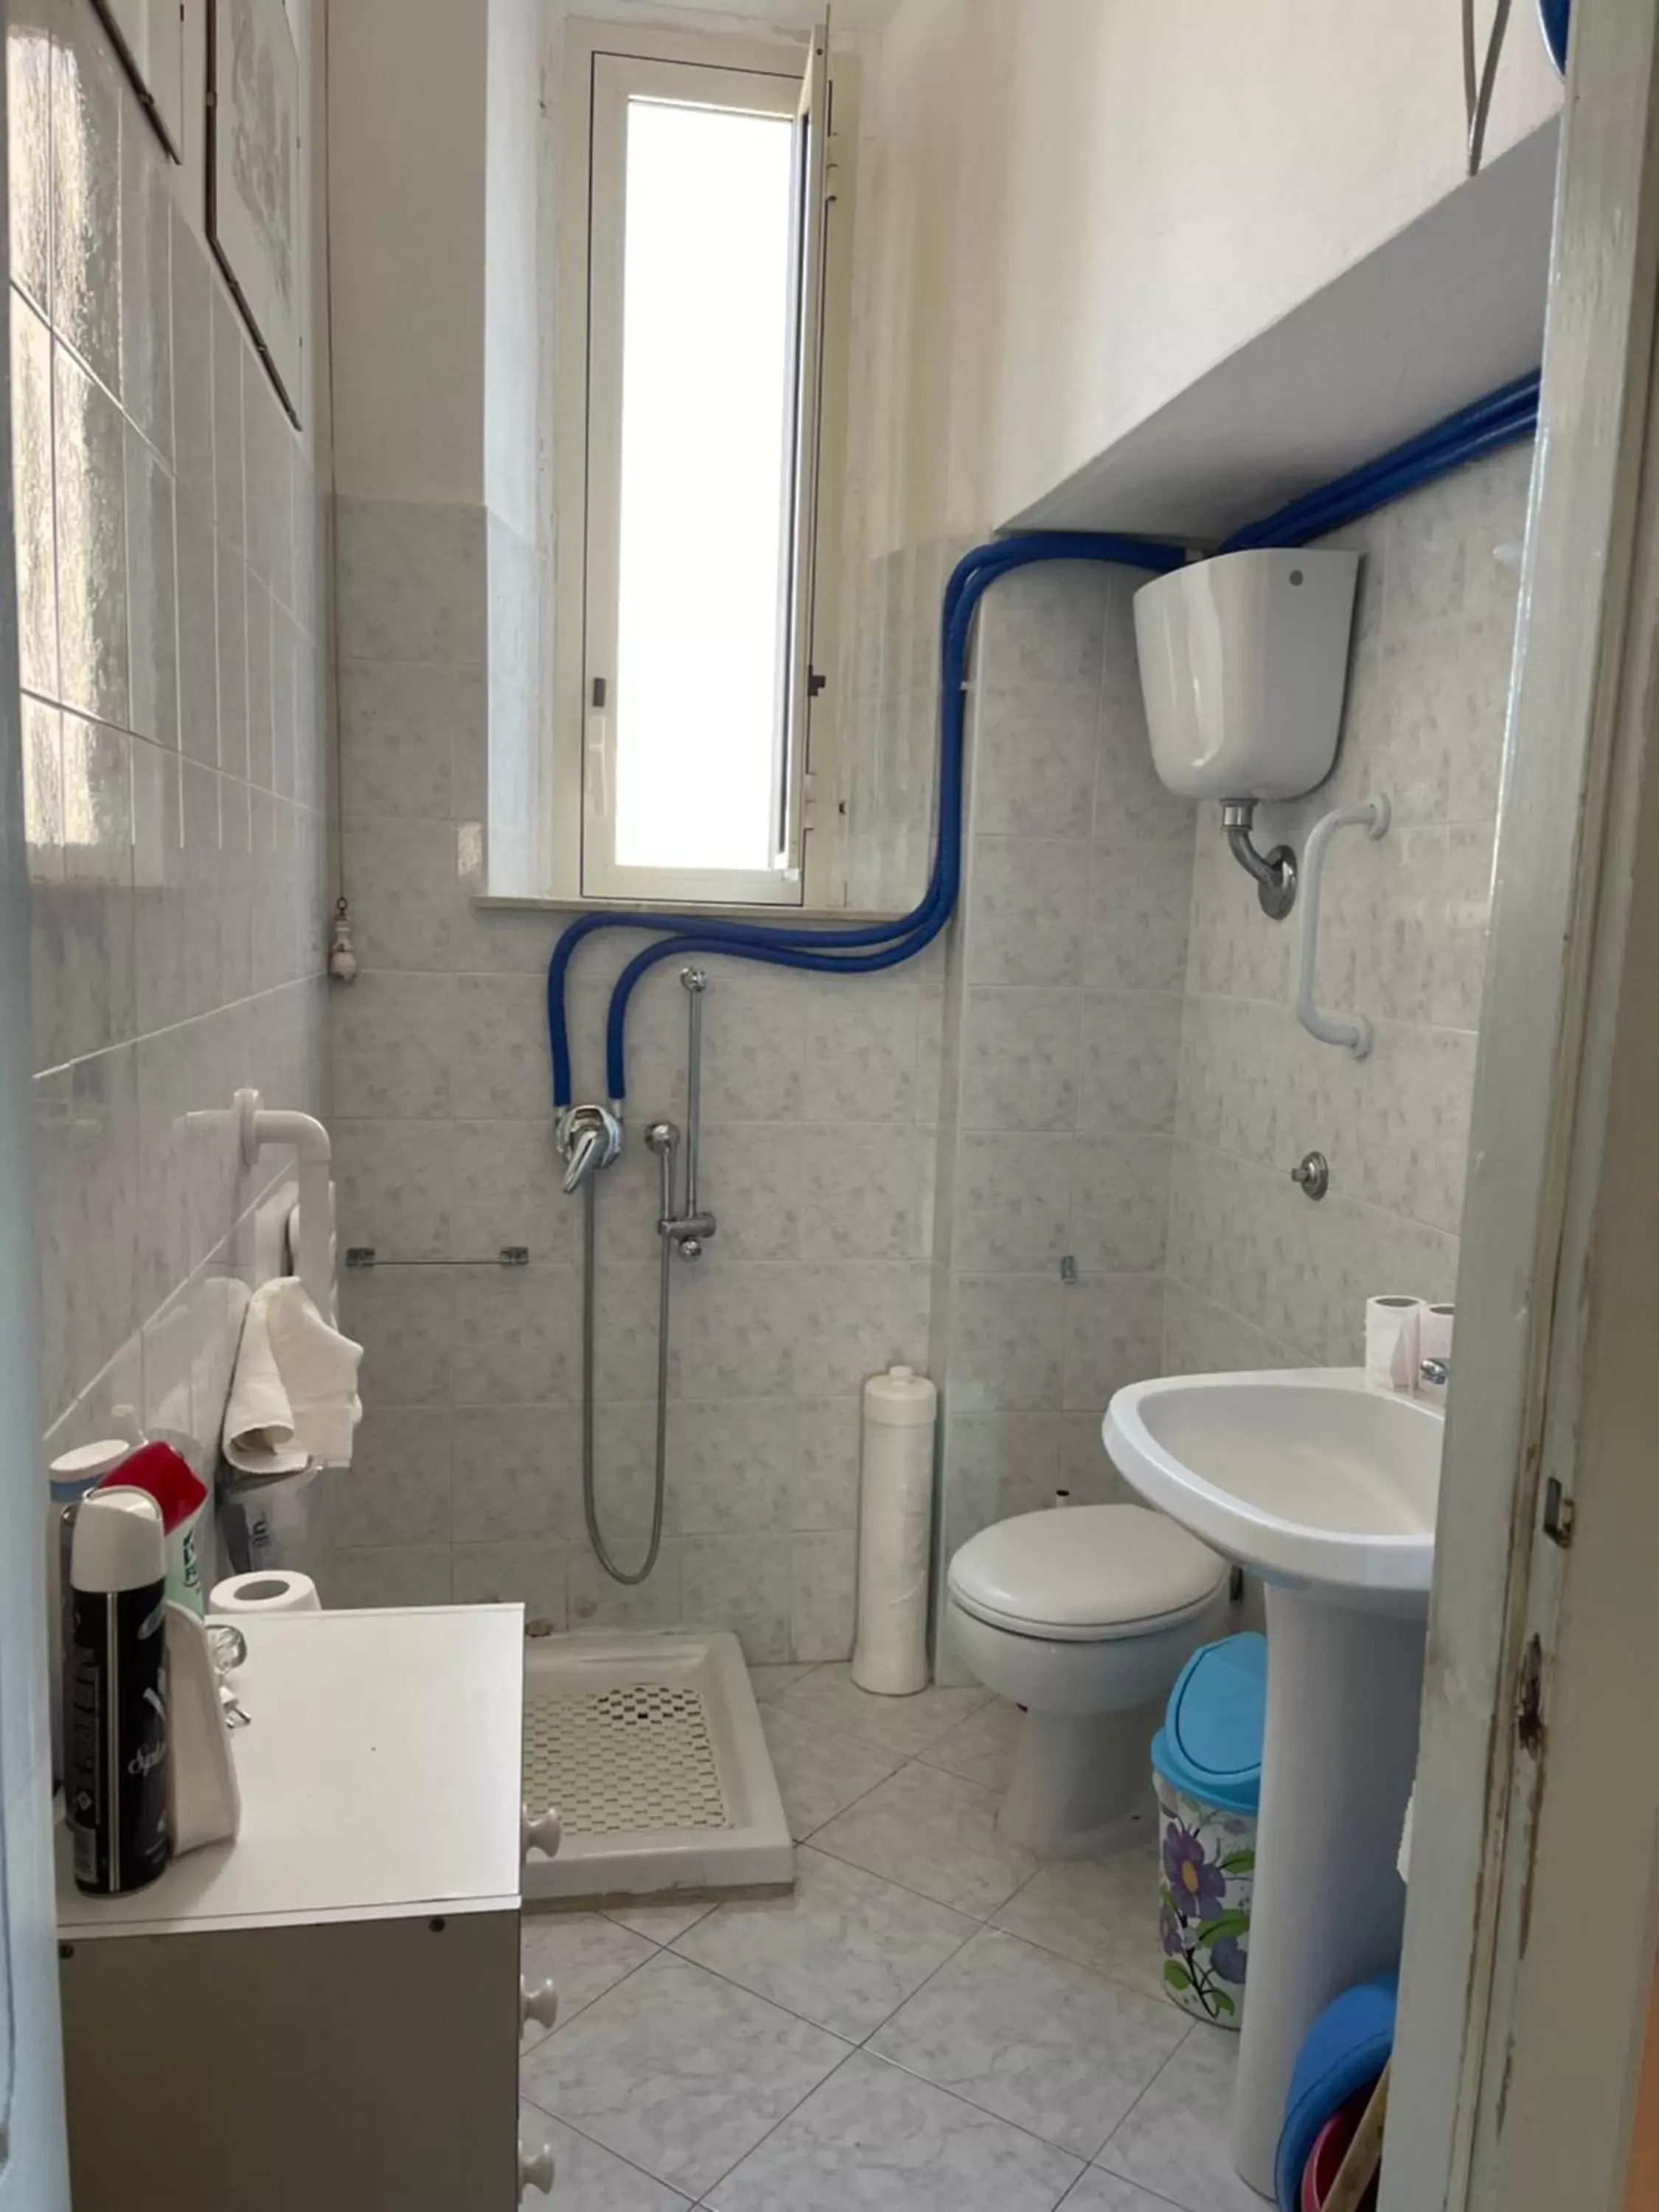 Bathroom in Villino Vanzetti 1930